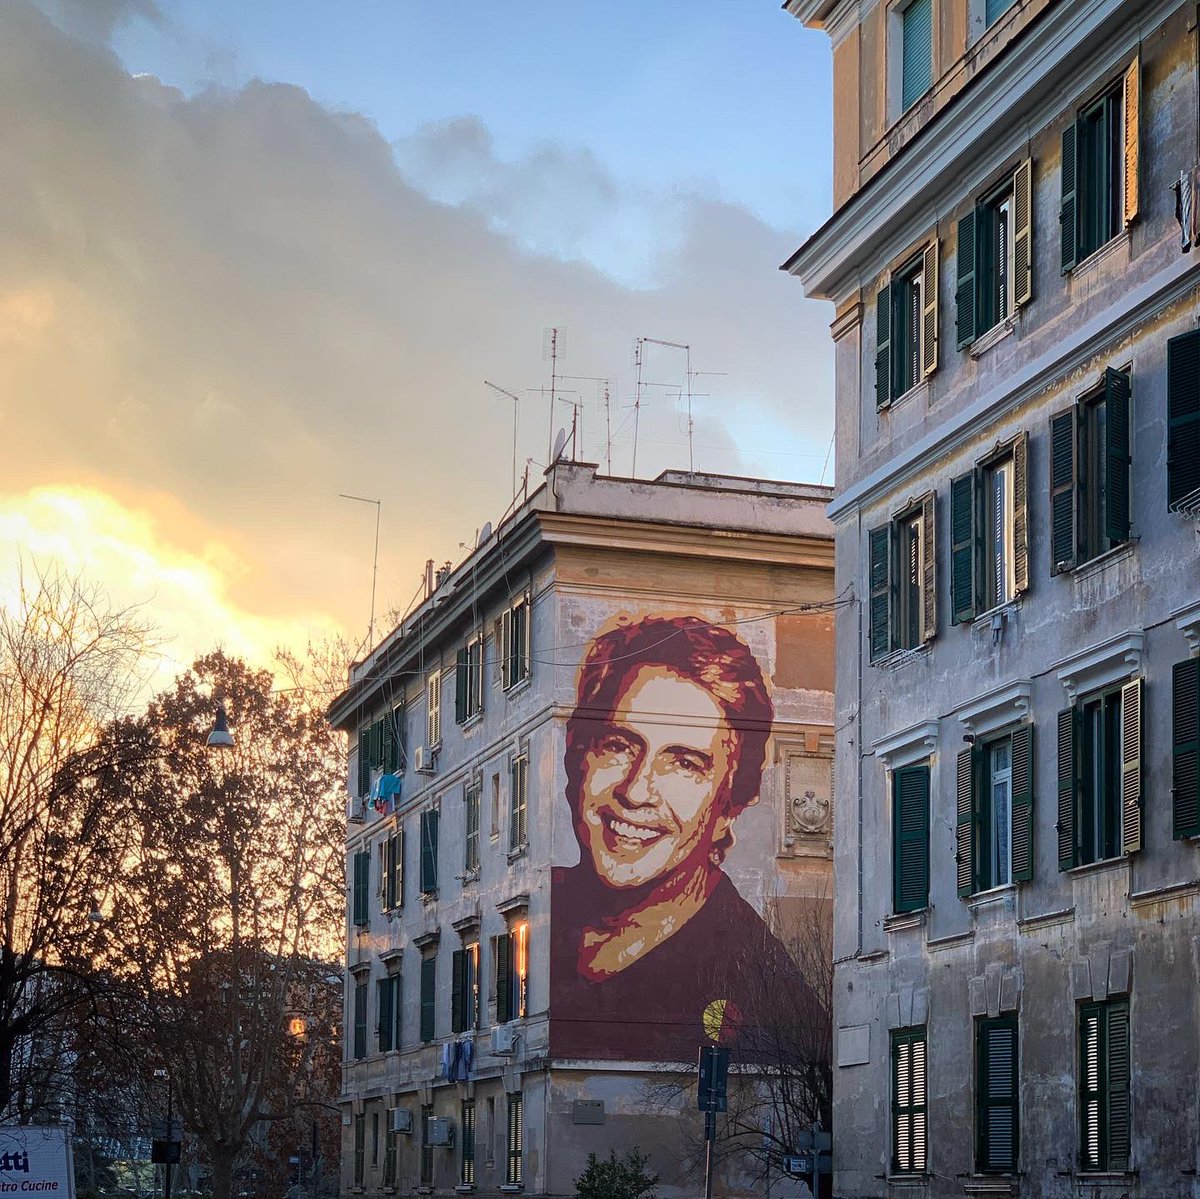 Un sorriso brillante e contagioso tra le architetture di #Testaccio: il nuovo splendido #murale realizzato da #Lucamaleonte, dedicato al grande cantautore #LandoFiorini. Cuore di #Roma ❤️

#RomaOra